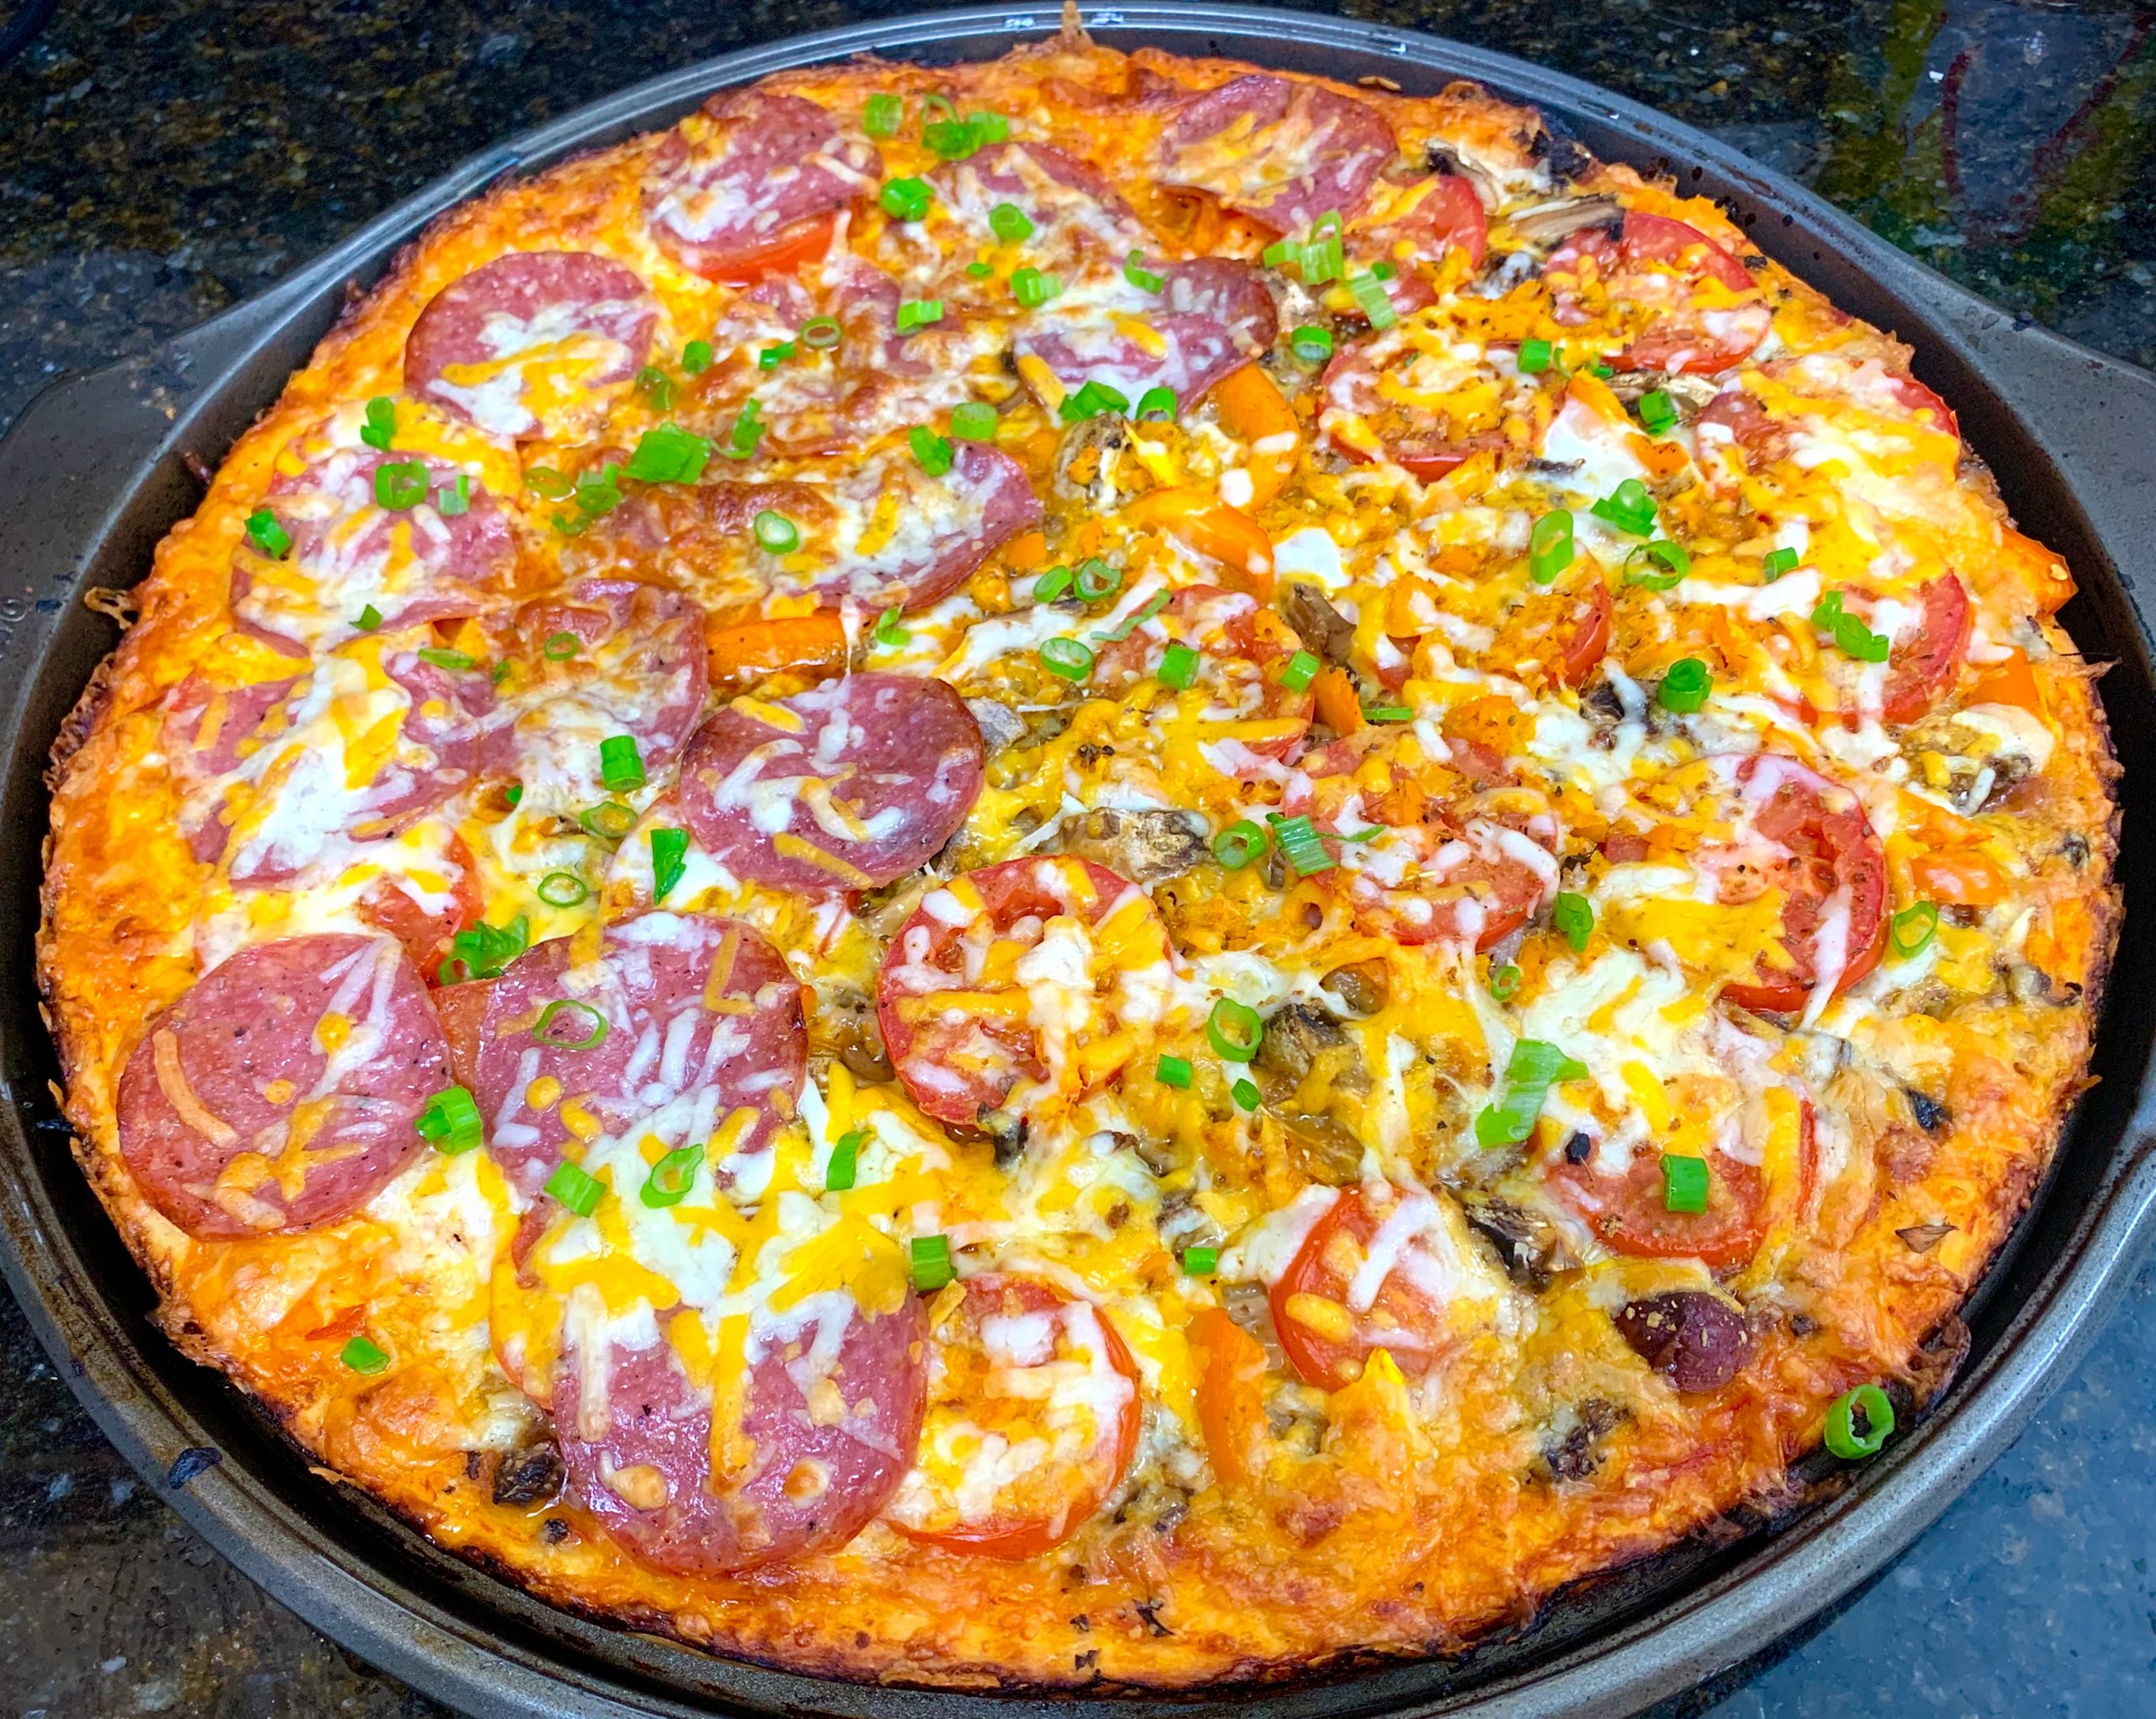 Home Made Pizza Recipe (share) – PacificIslandRecipe.com